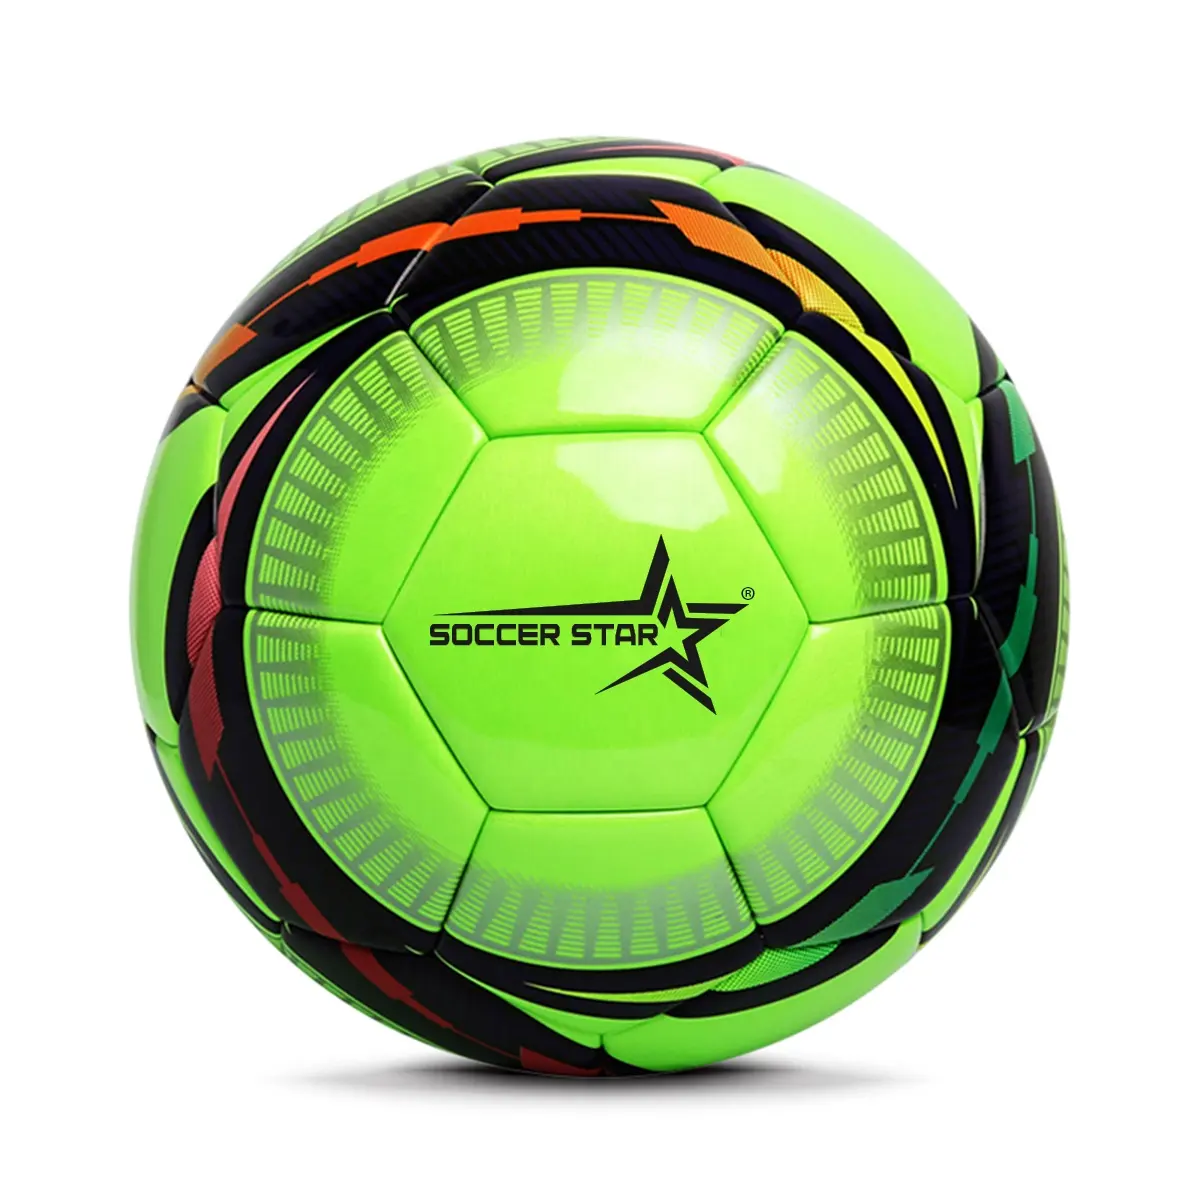 Wc 2022 bola de futebol tamanho 5 tamanho 4, de alta qualidade, bom jogo de futebol, popular